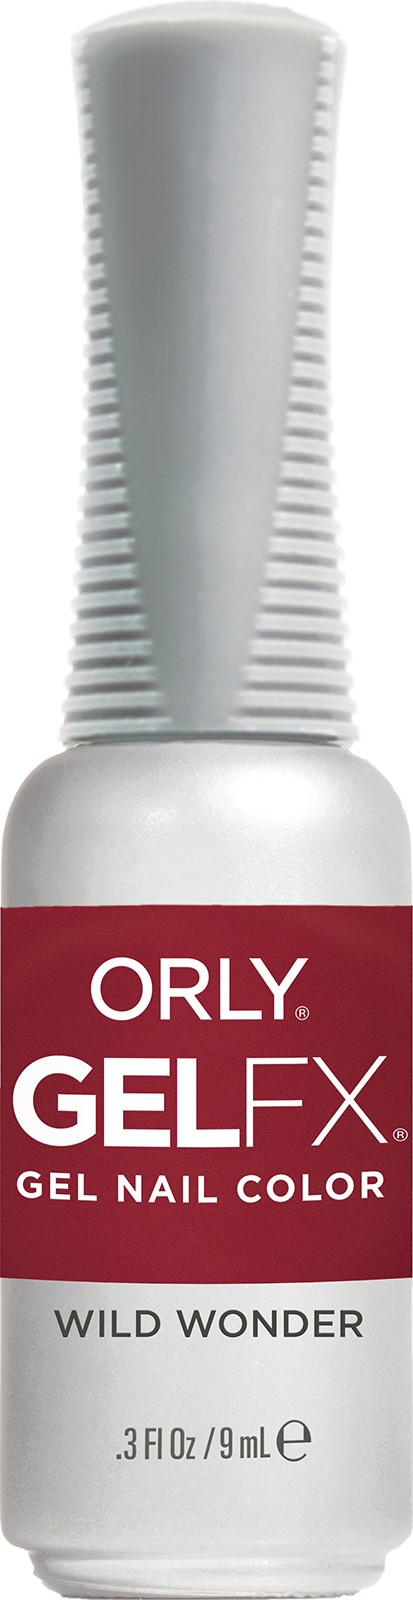 Гель-лак для ногтей ORLY Gel FX Nail Color WILD WONDER, 9мл wonder lab эко гель для деликатной стирки белья с ароматом утренних ов 1400